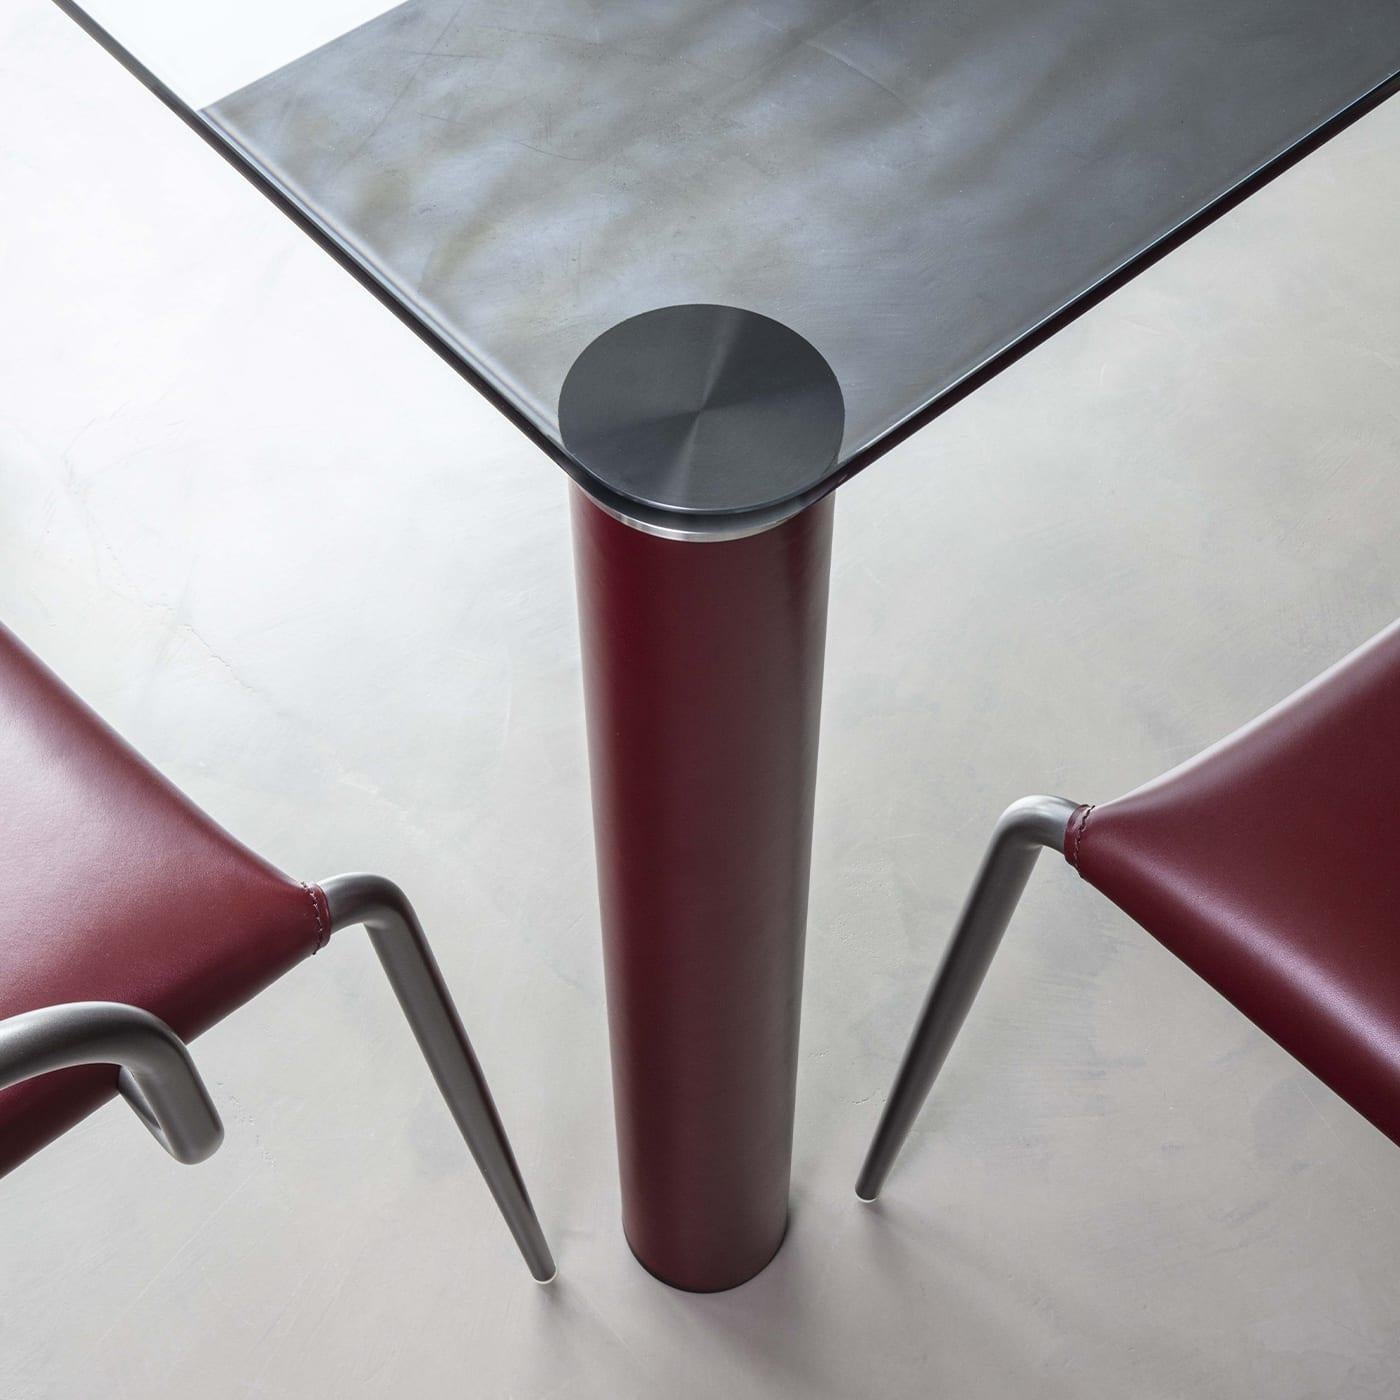 Zylindrische Stahlbeine, luxuriös mit burgunderrotem Leder überzogen, bilden den Sockel dieses majestätischen Tisches, eine hervorragende Ergänzung für moderne Esszimmer. Eine kostbare Tischplatte aus Rauchkristall mit abgerundeten Ecken und